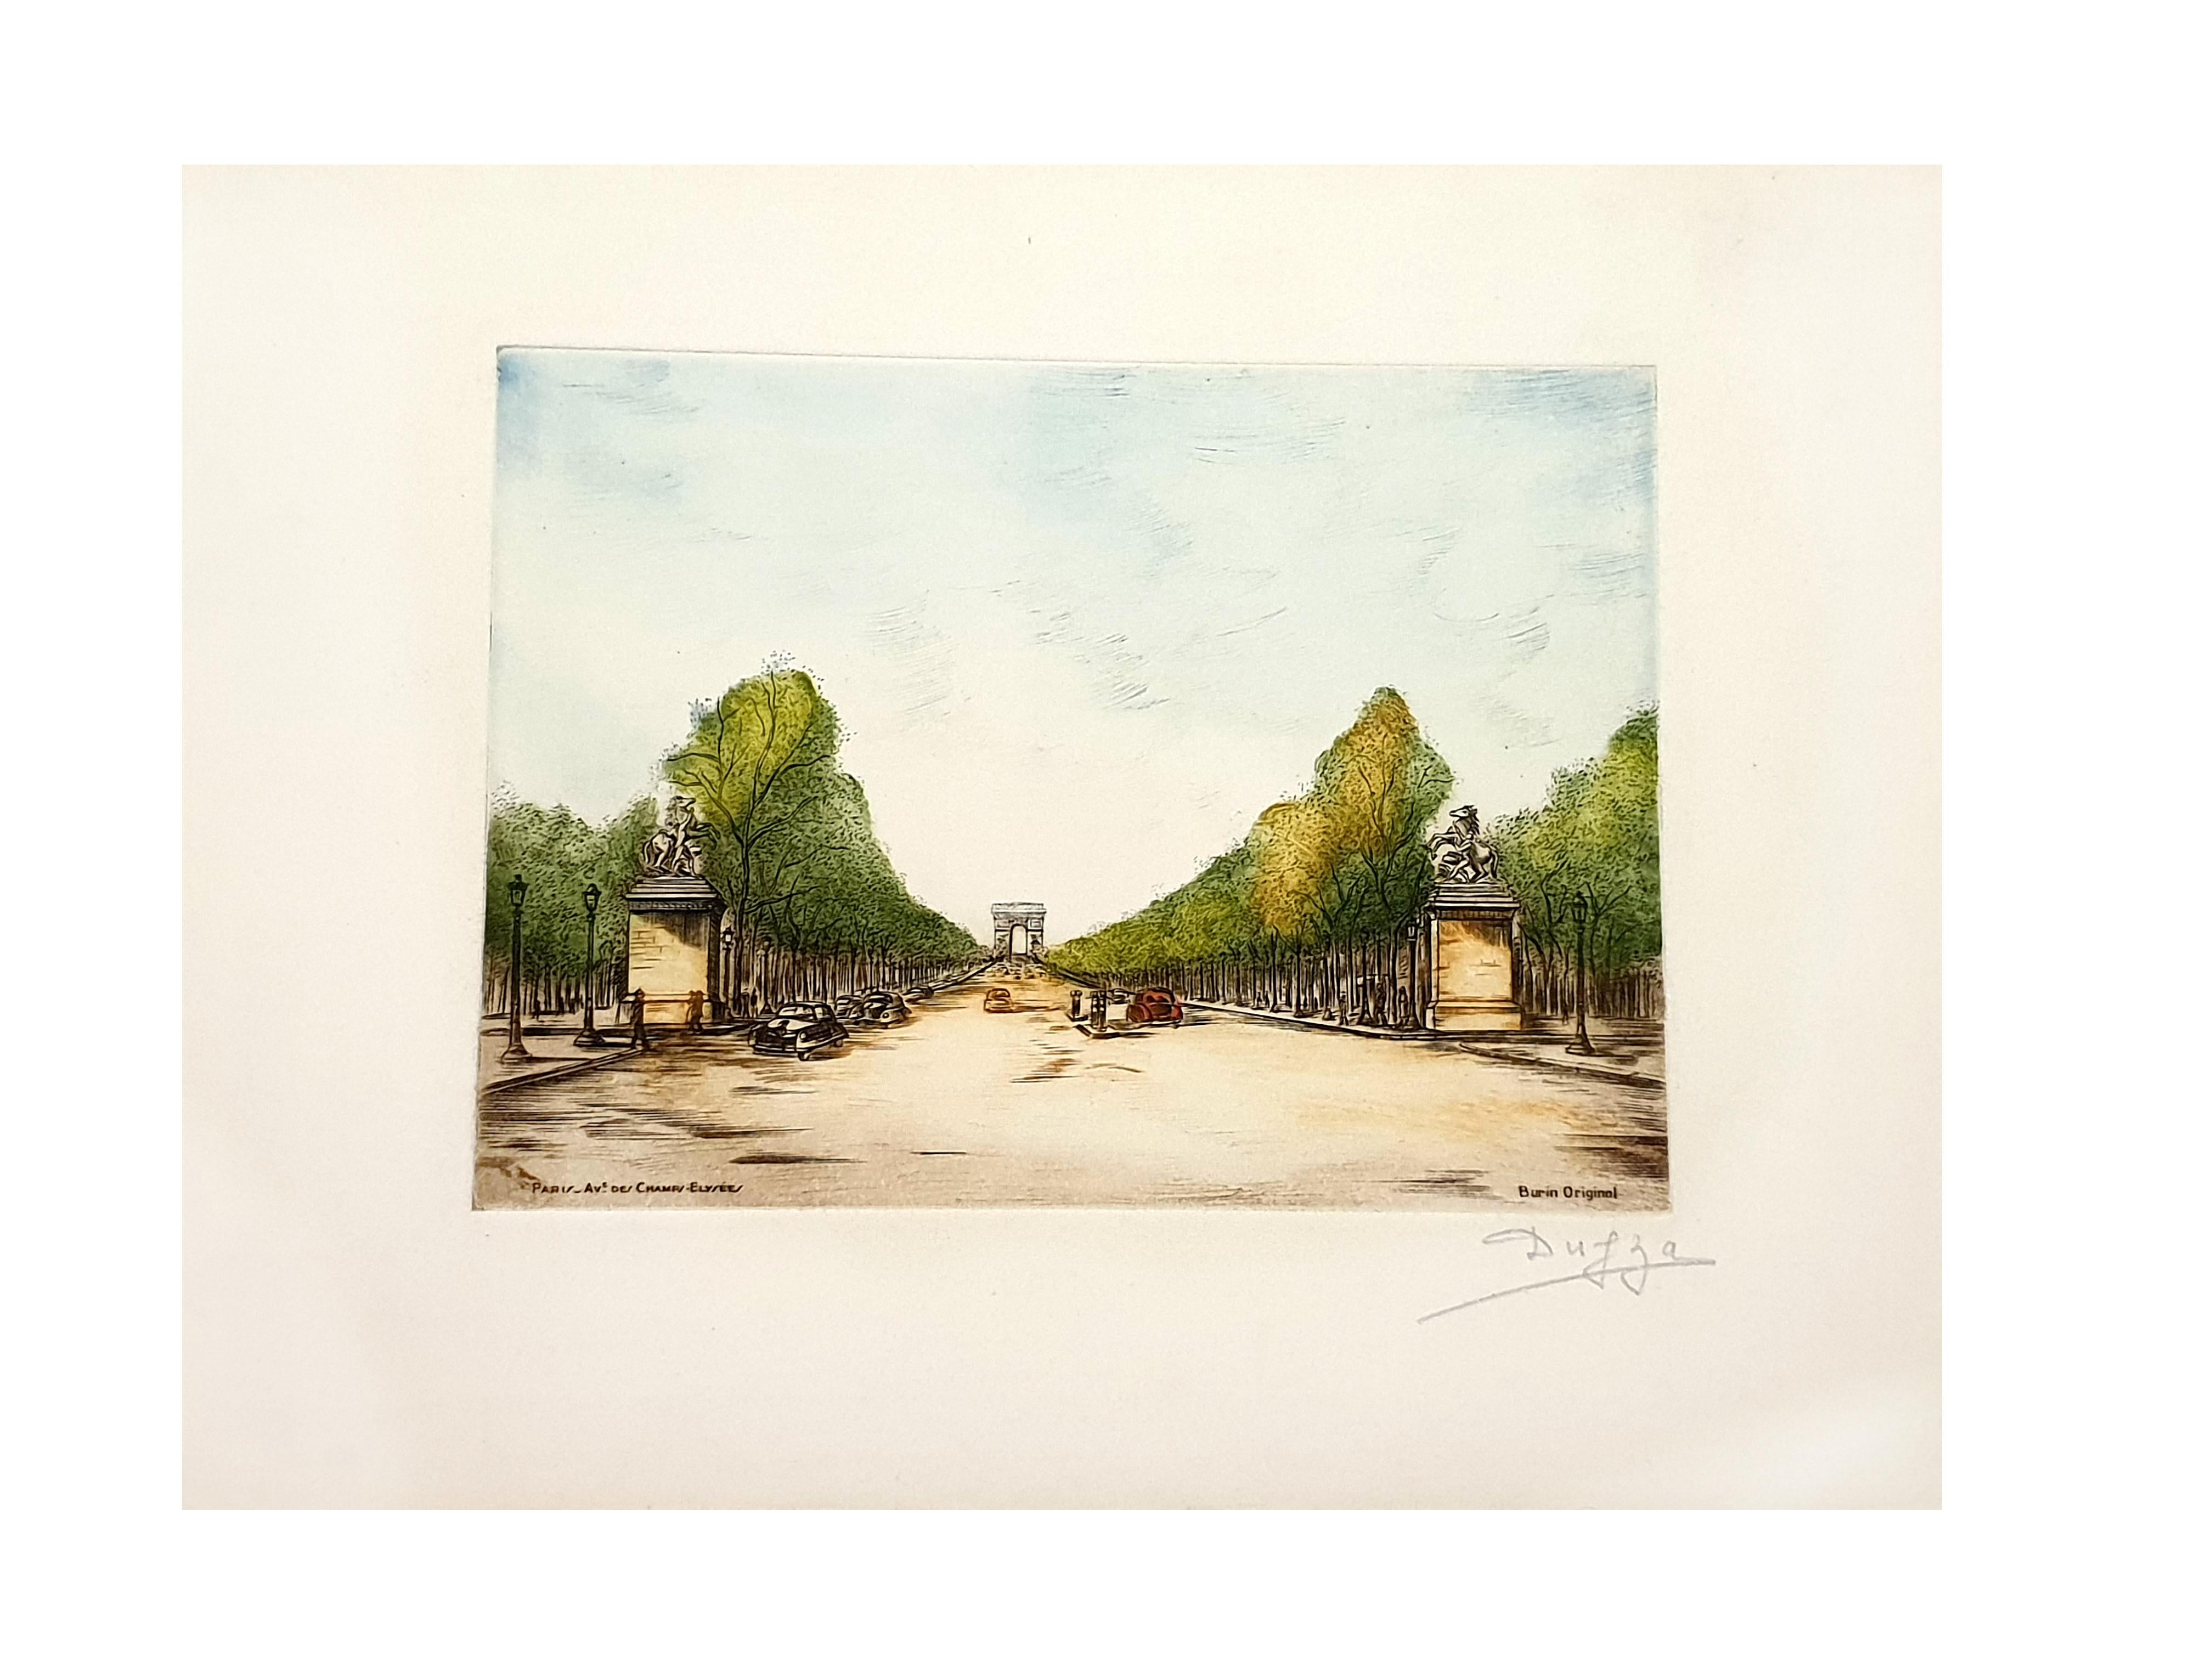 Dufza - Paris - Champs Elysées - Gravure originale signée à la main
Circa 1940
Signé à la main au crayon
Dimensions : 20 x 25 cm
Non numérotés comme émis 